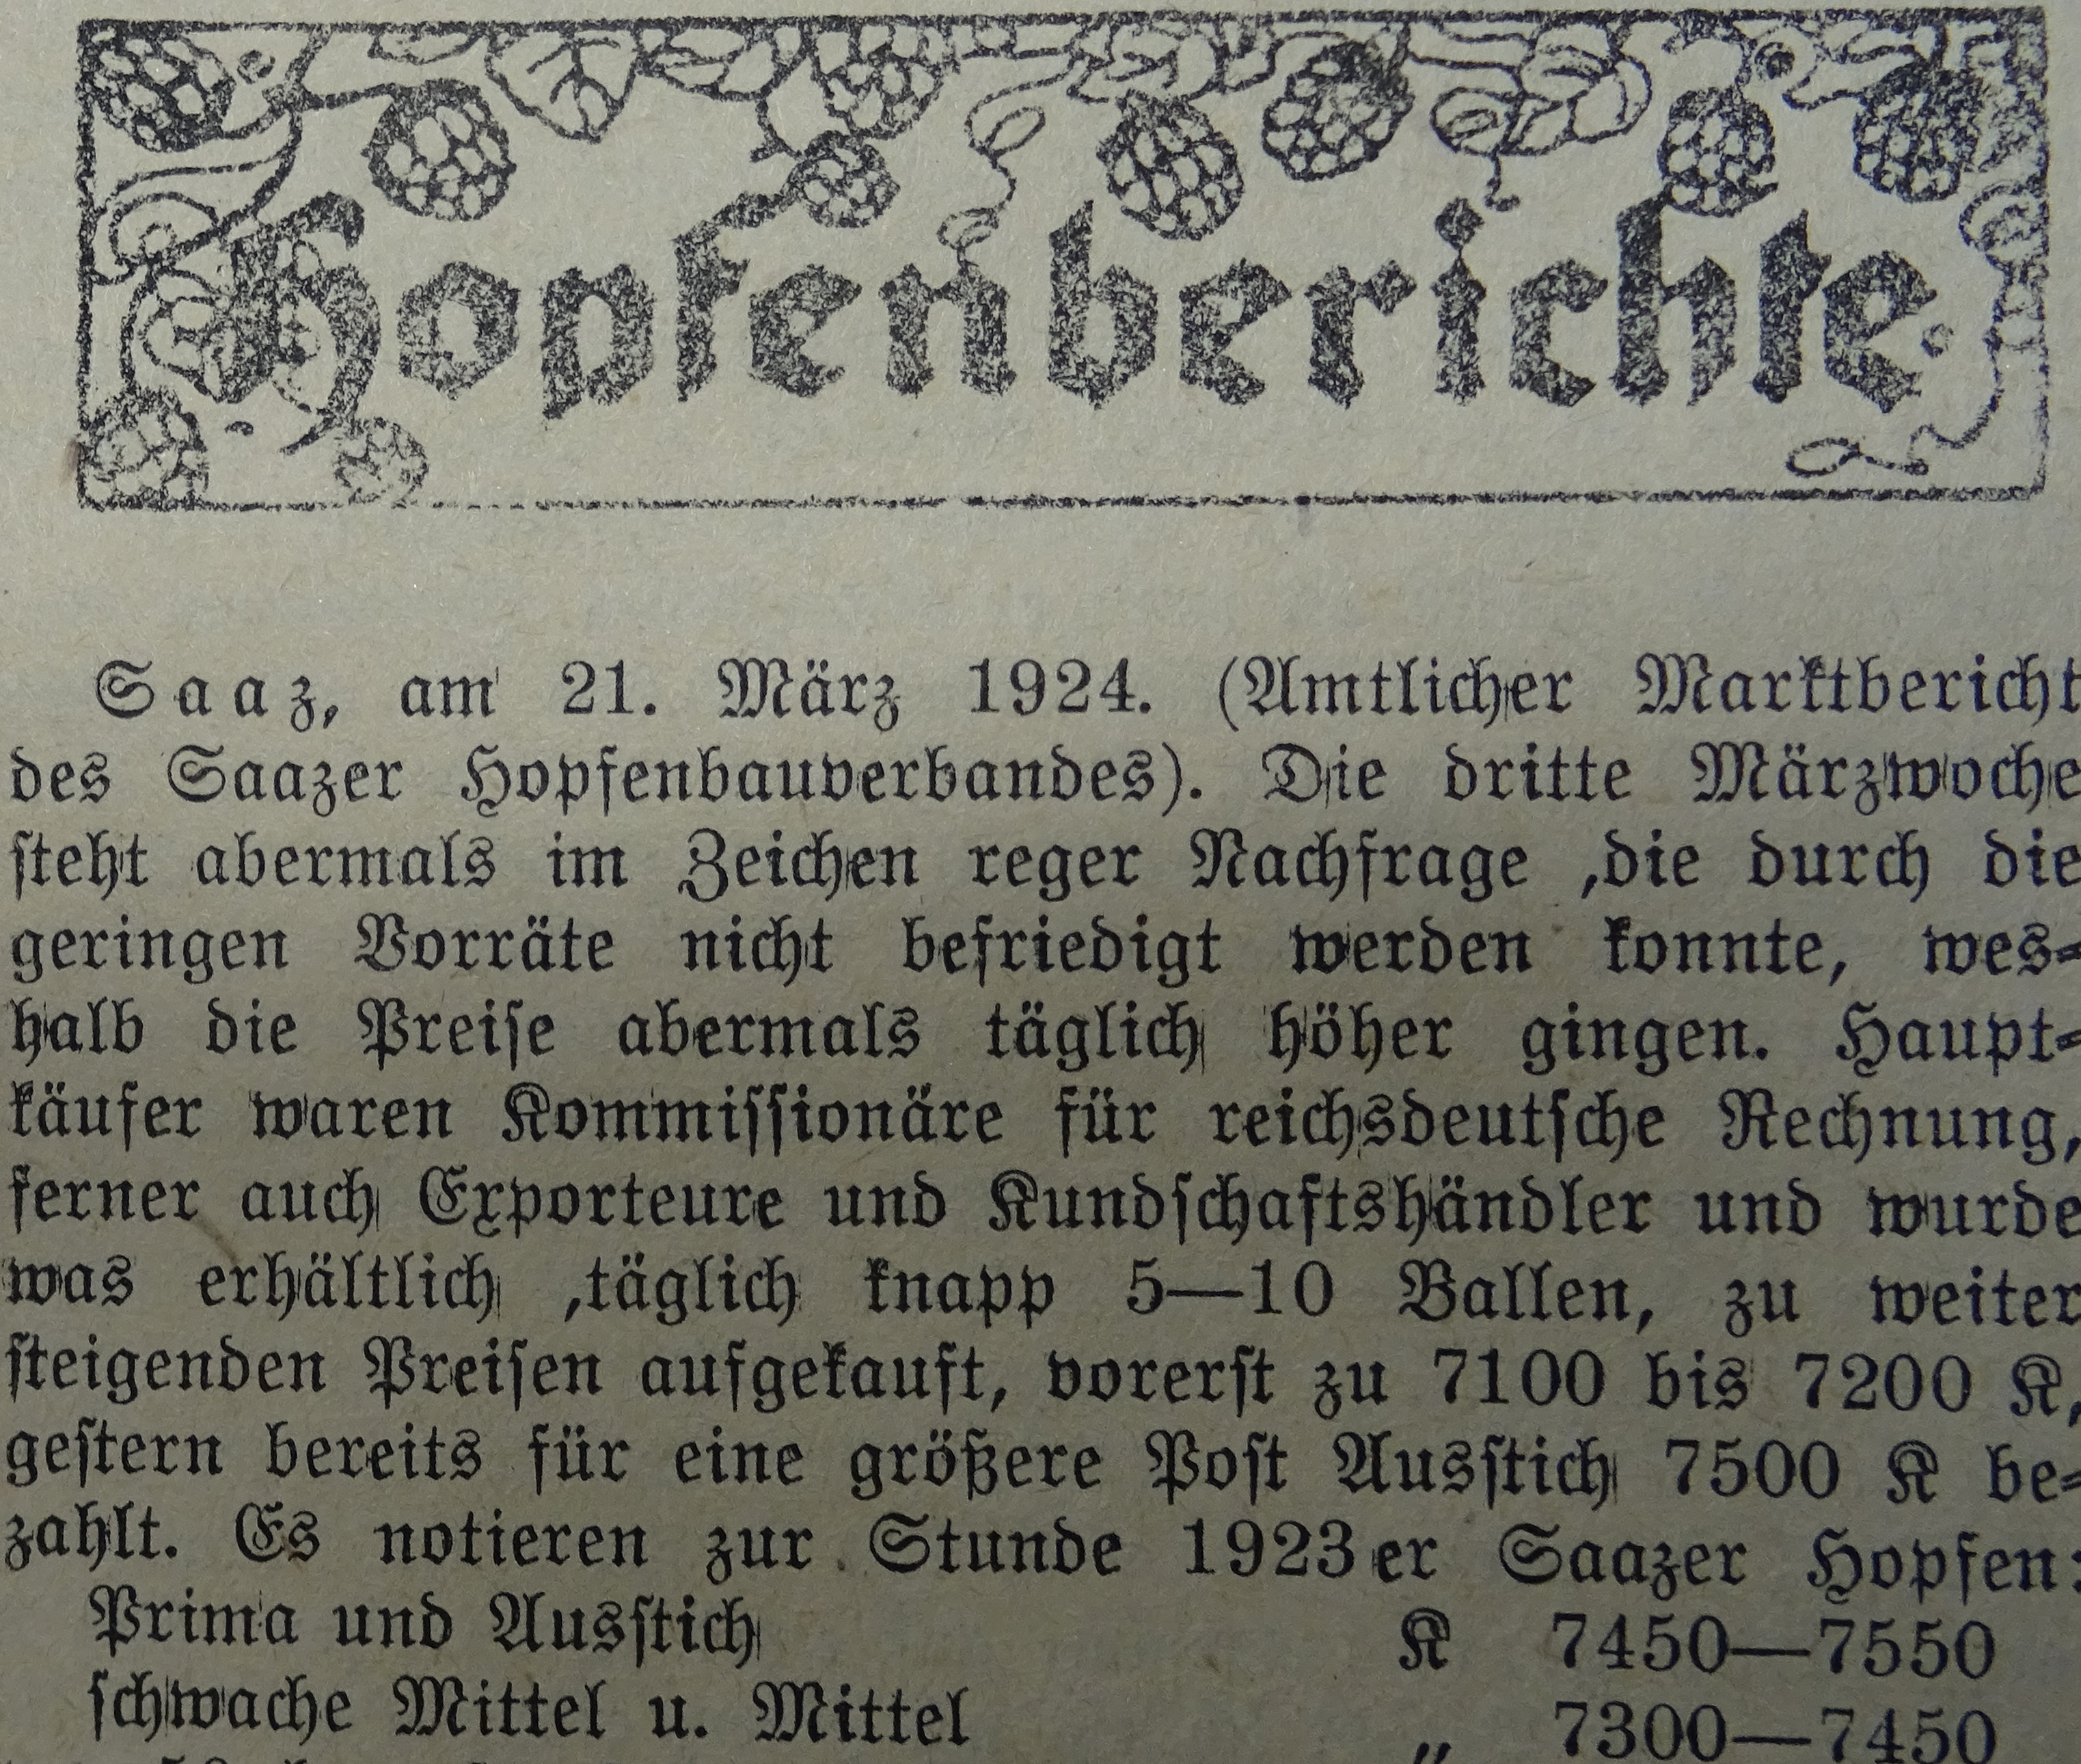 Pravidelné zprávy o cenách chmele z novin Saazer Hopfen- und Brauer- Zeitung - i v březnu 1924 stoupaly